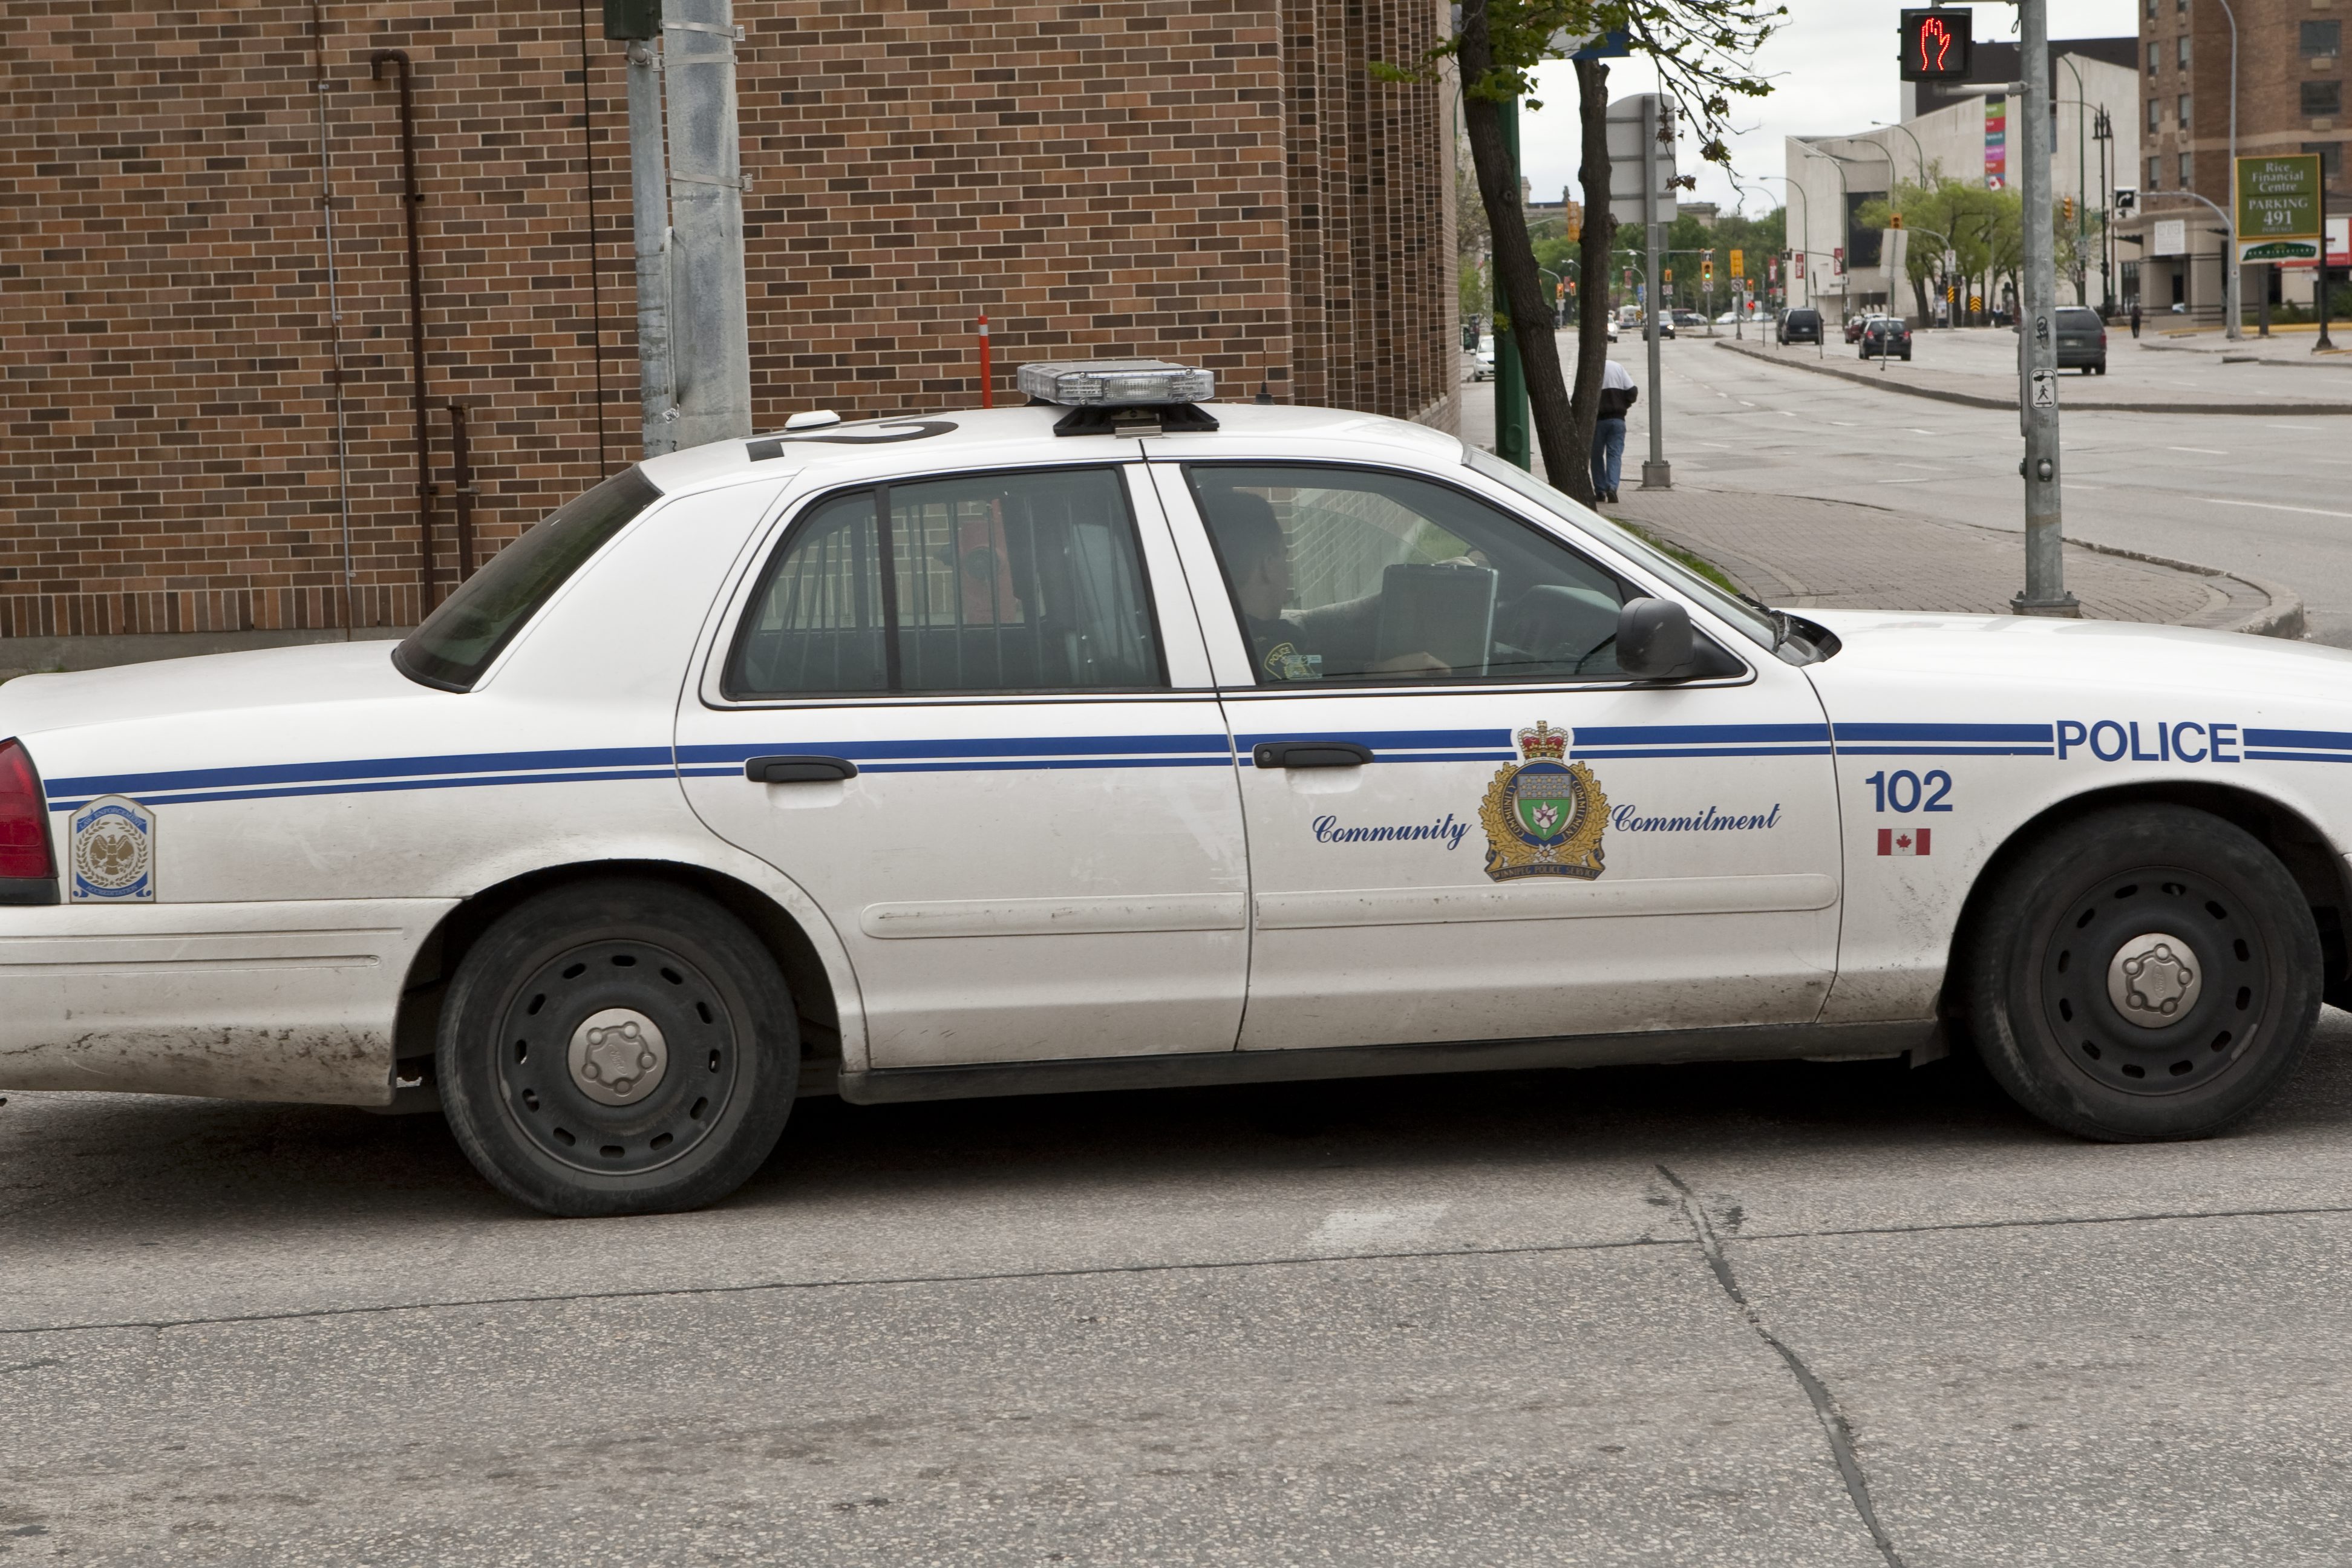 en politibil patruljerer gaden mandag den 23.maj 2011.